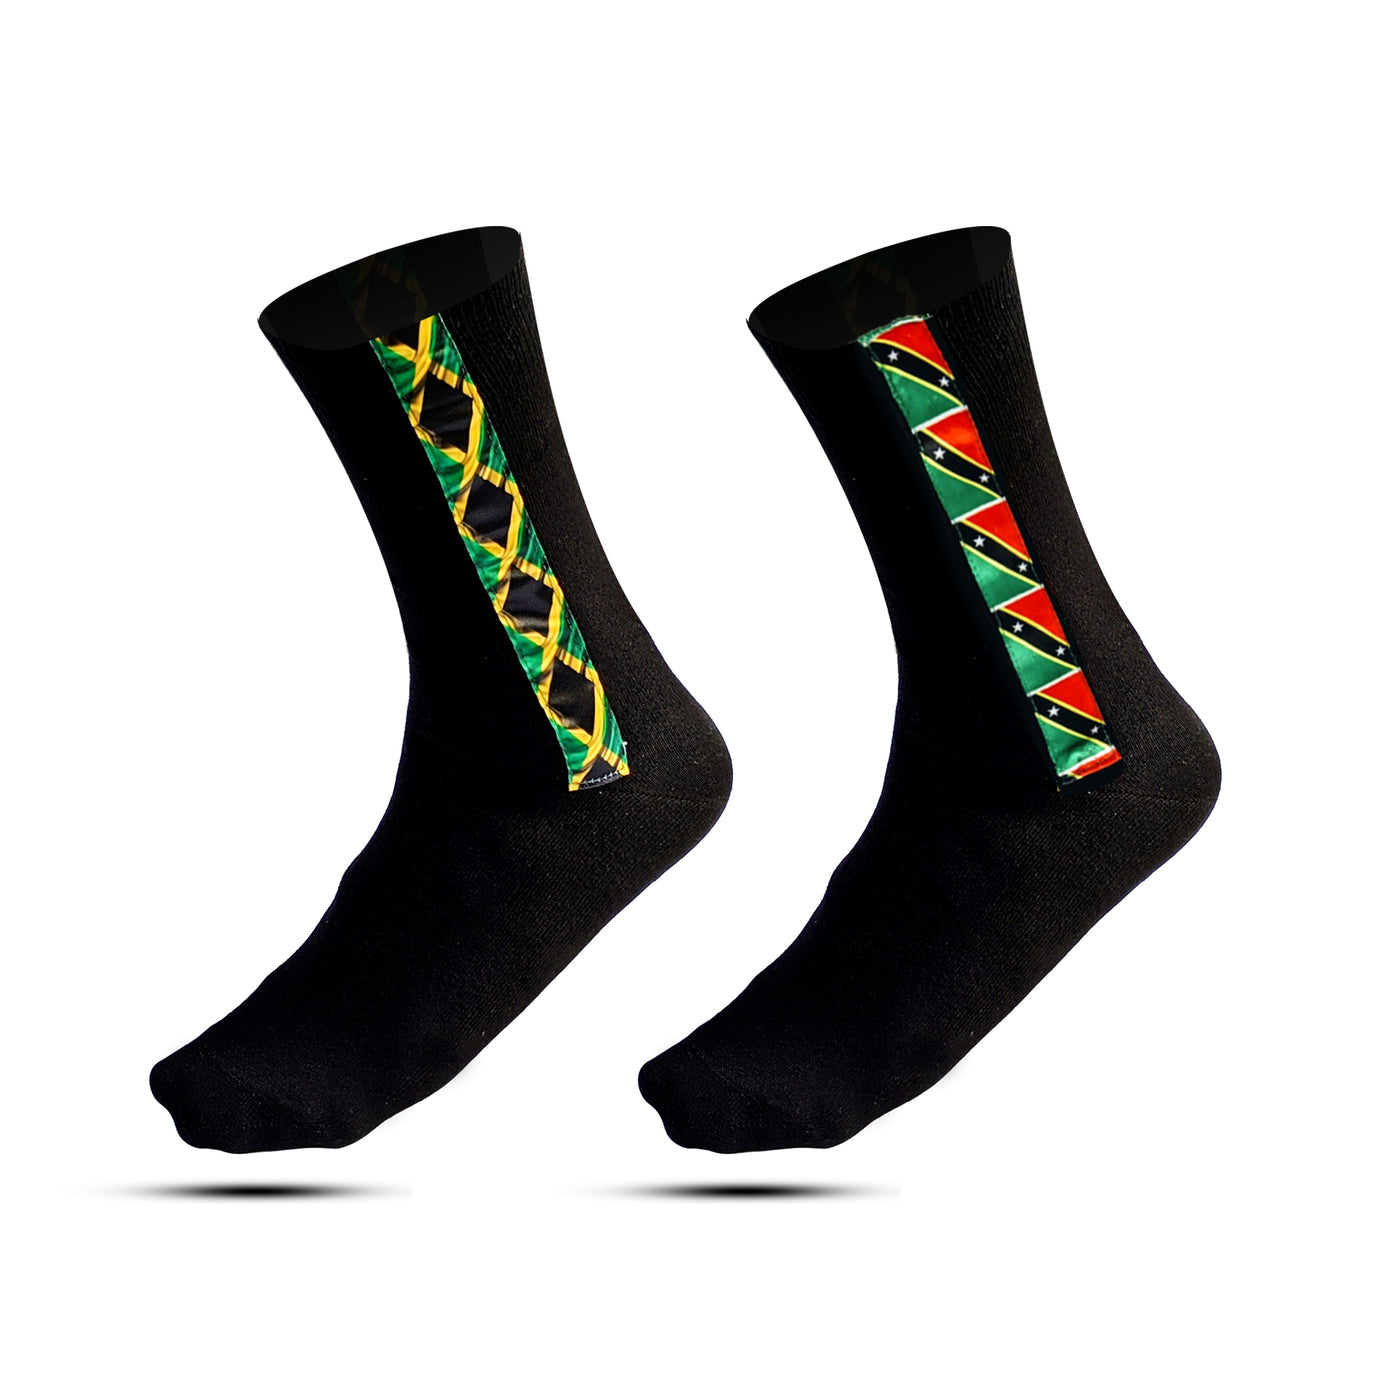 Socks with Jamaica flag